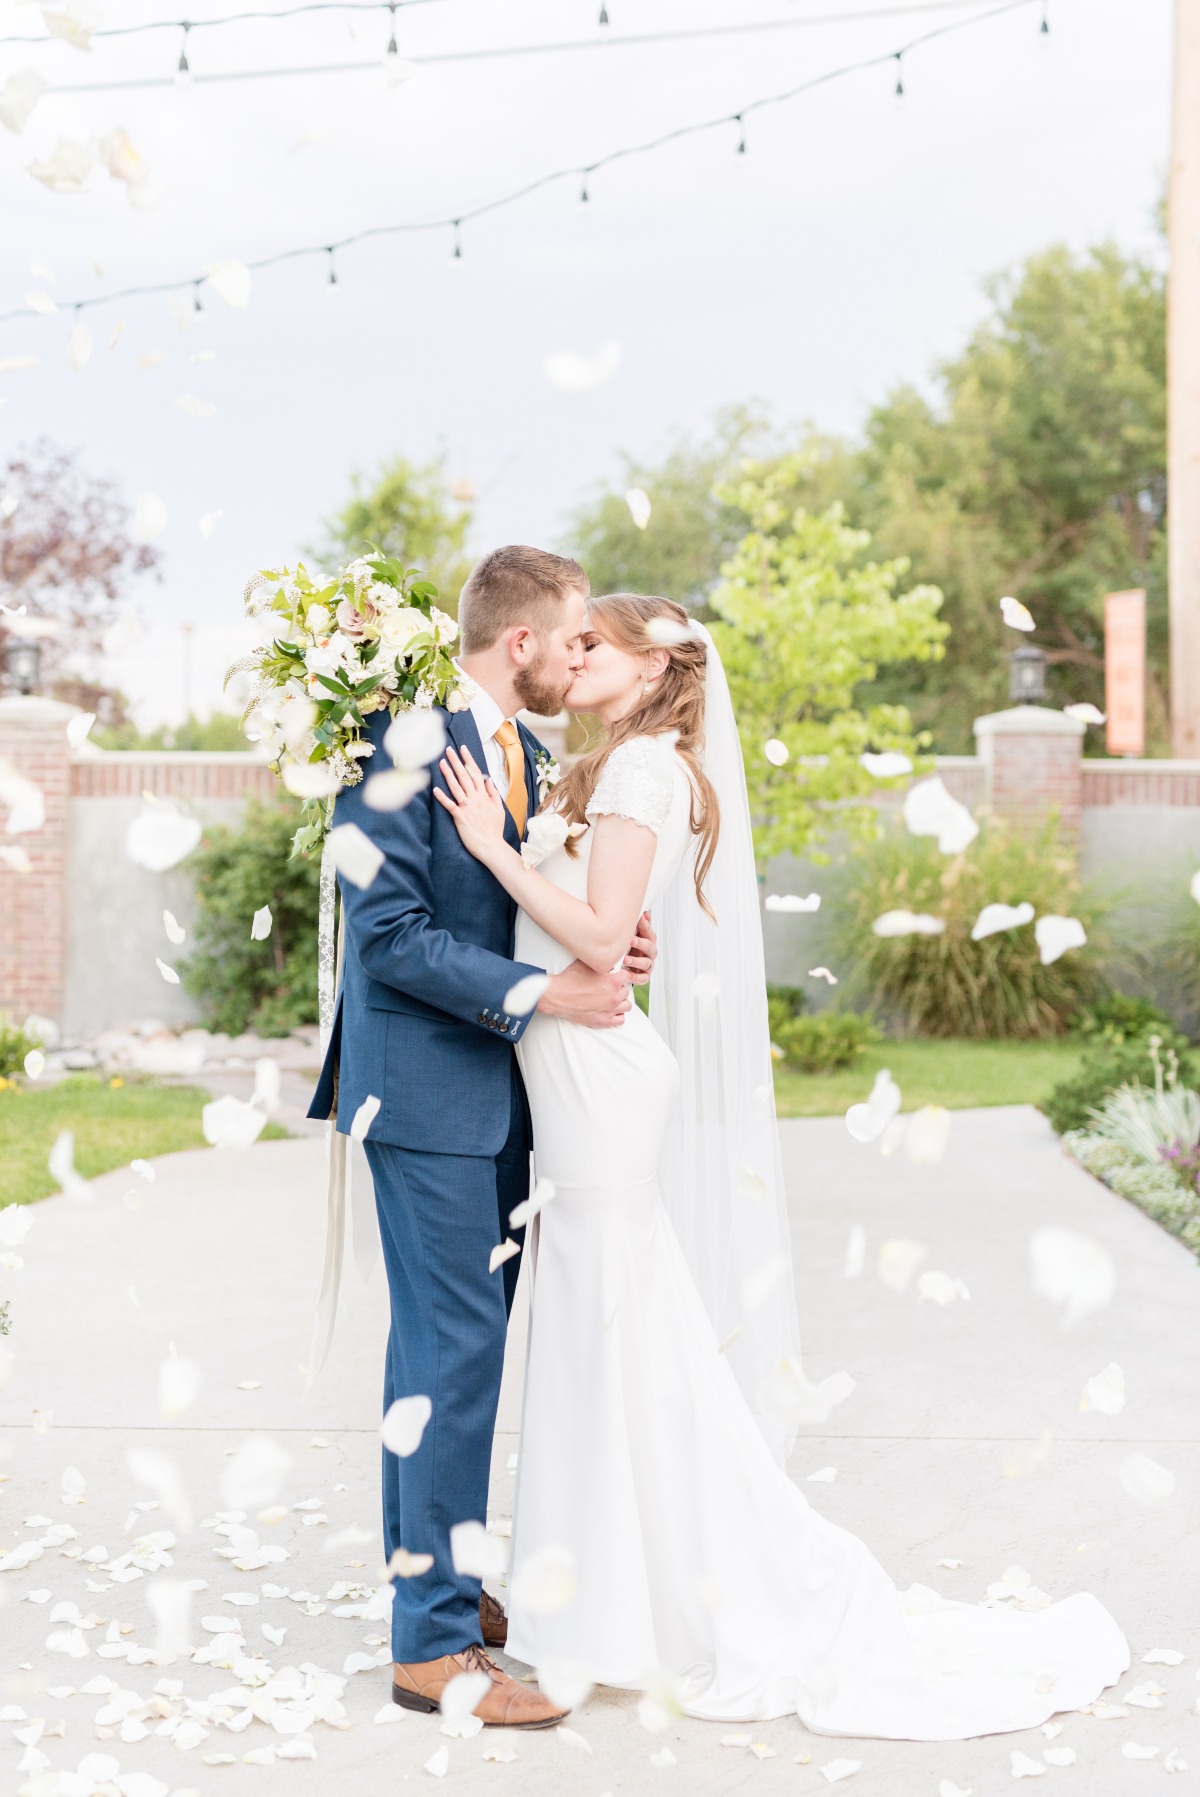 wedding kiss with flower petal toss